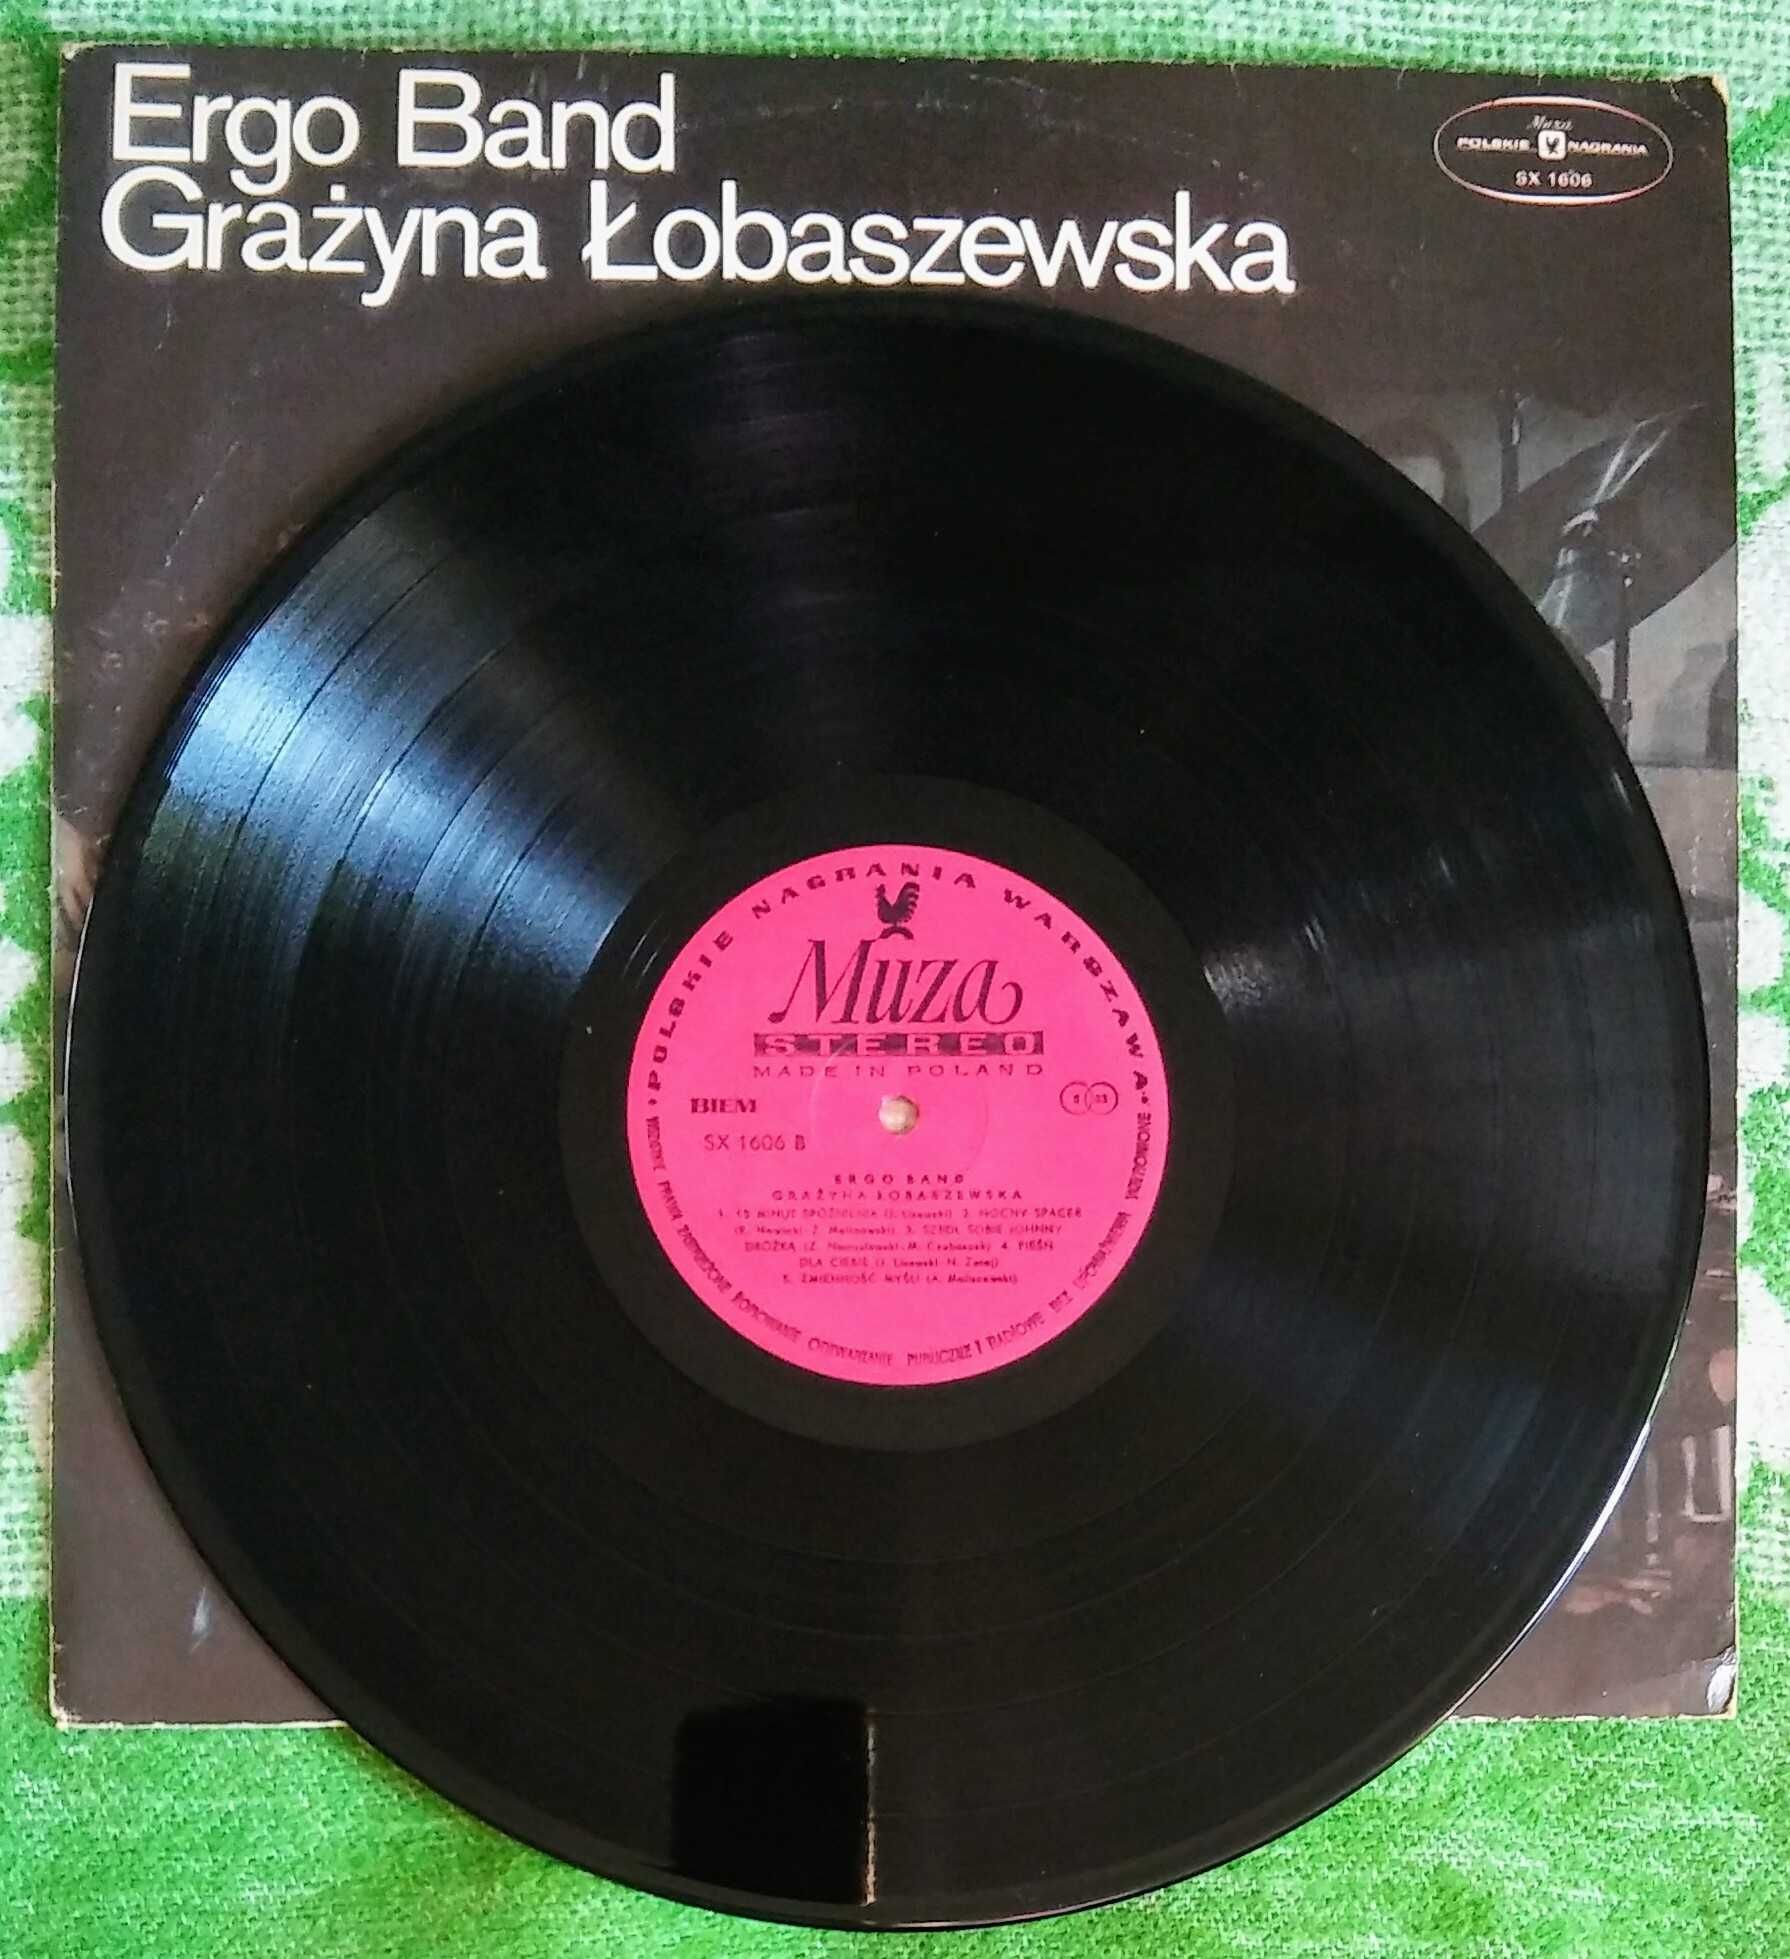 Ergo Band Grażyna Łobaszewska 1978. 1 - wsze wyd.